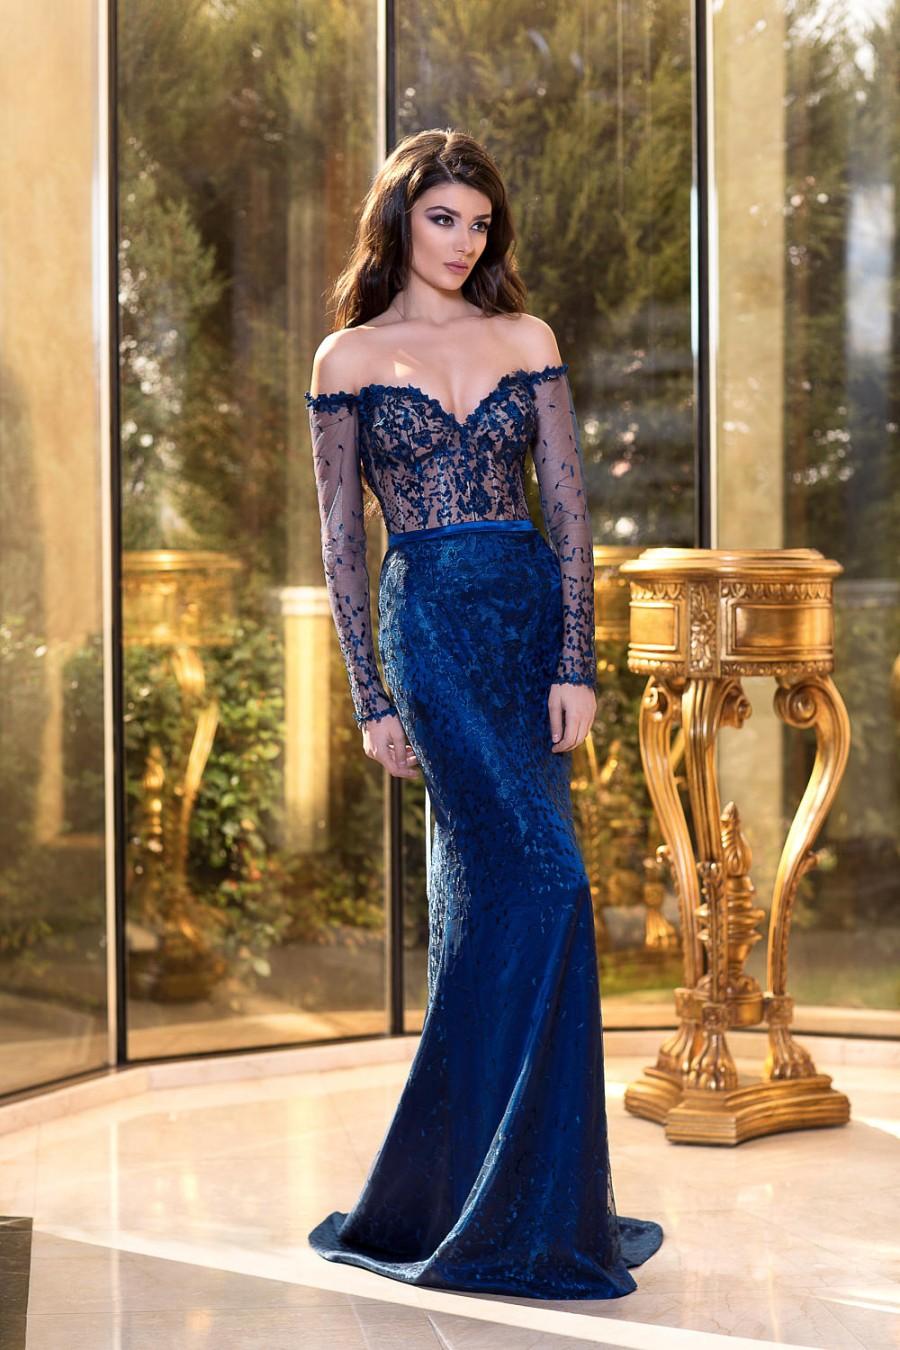 زفاف - Blue evening dress, Long cocktail evening gown, Formal or bridesmaid dress, Long sleeves Prom dress, Couture dress with lace by tonena